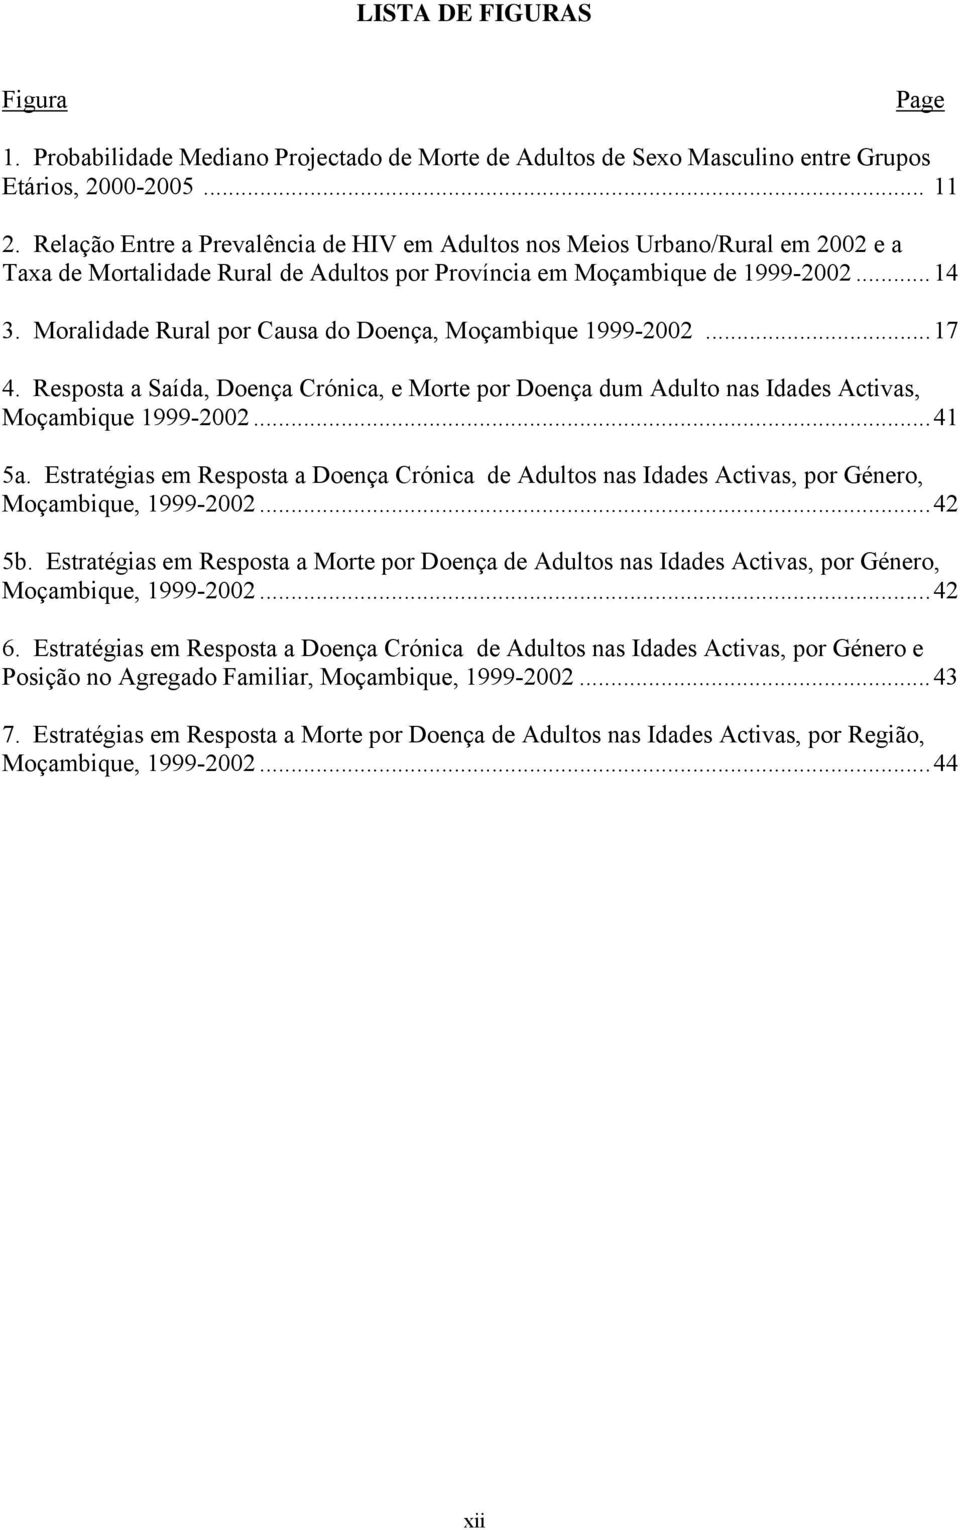 Moralidade Rural por Causa do Doença, Moçambique 1999-2002...17 4. Resposta a Saída, Doença Crónica, e Morte por Doença dum Adulto nas Idades Activas, Moçambique 1999-2002...41 5a.